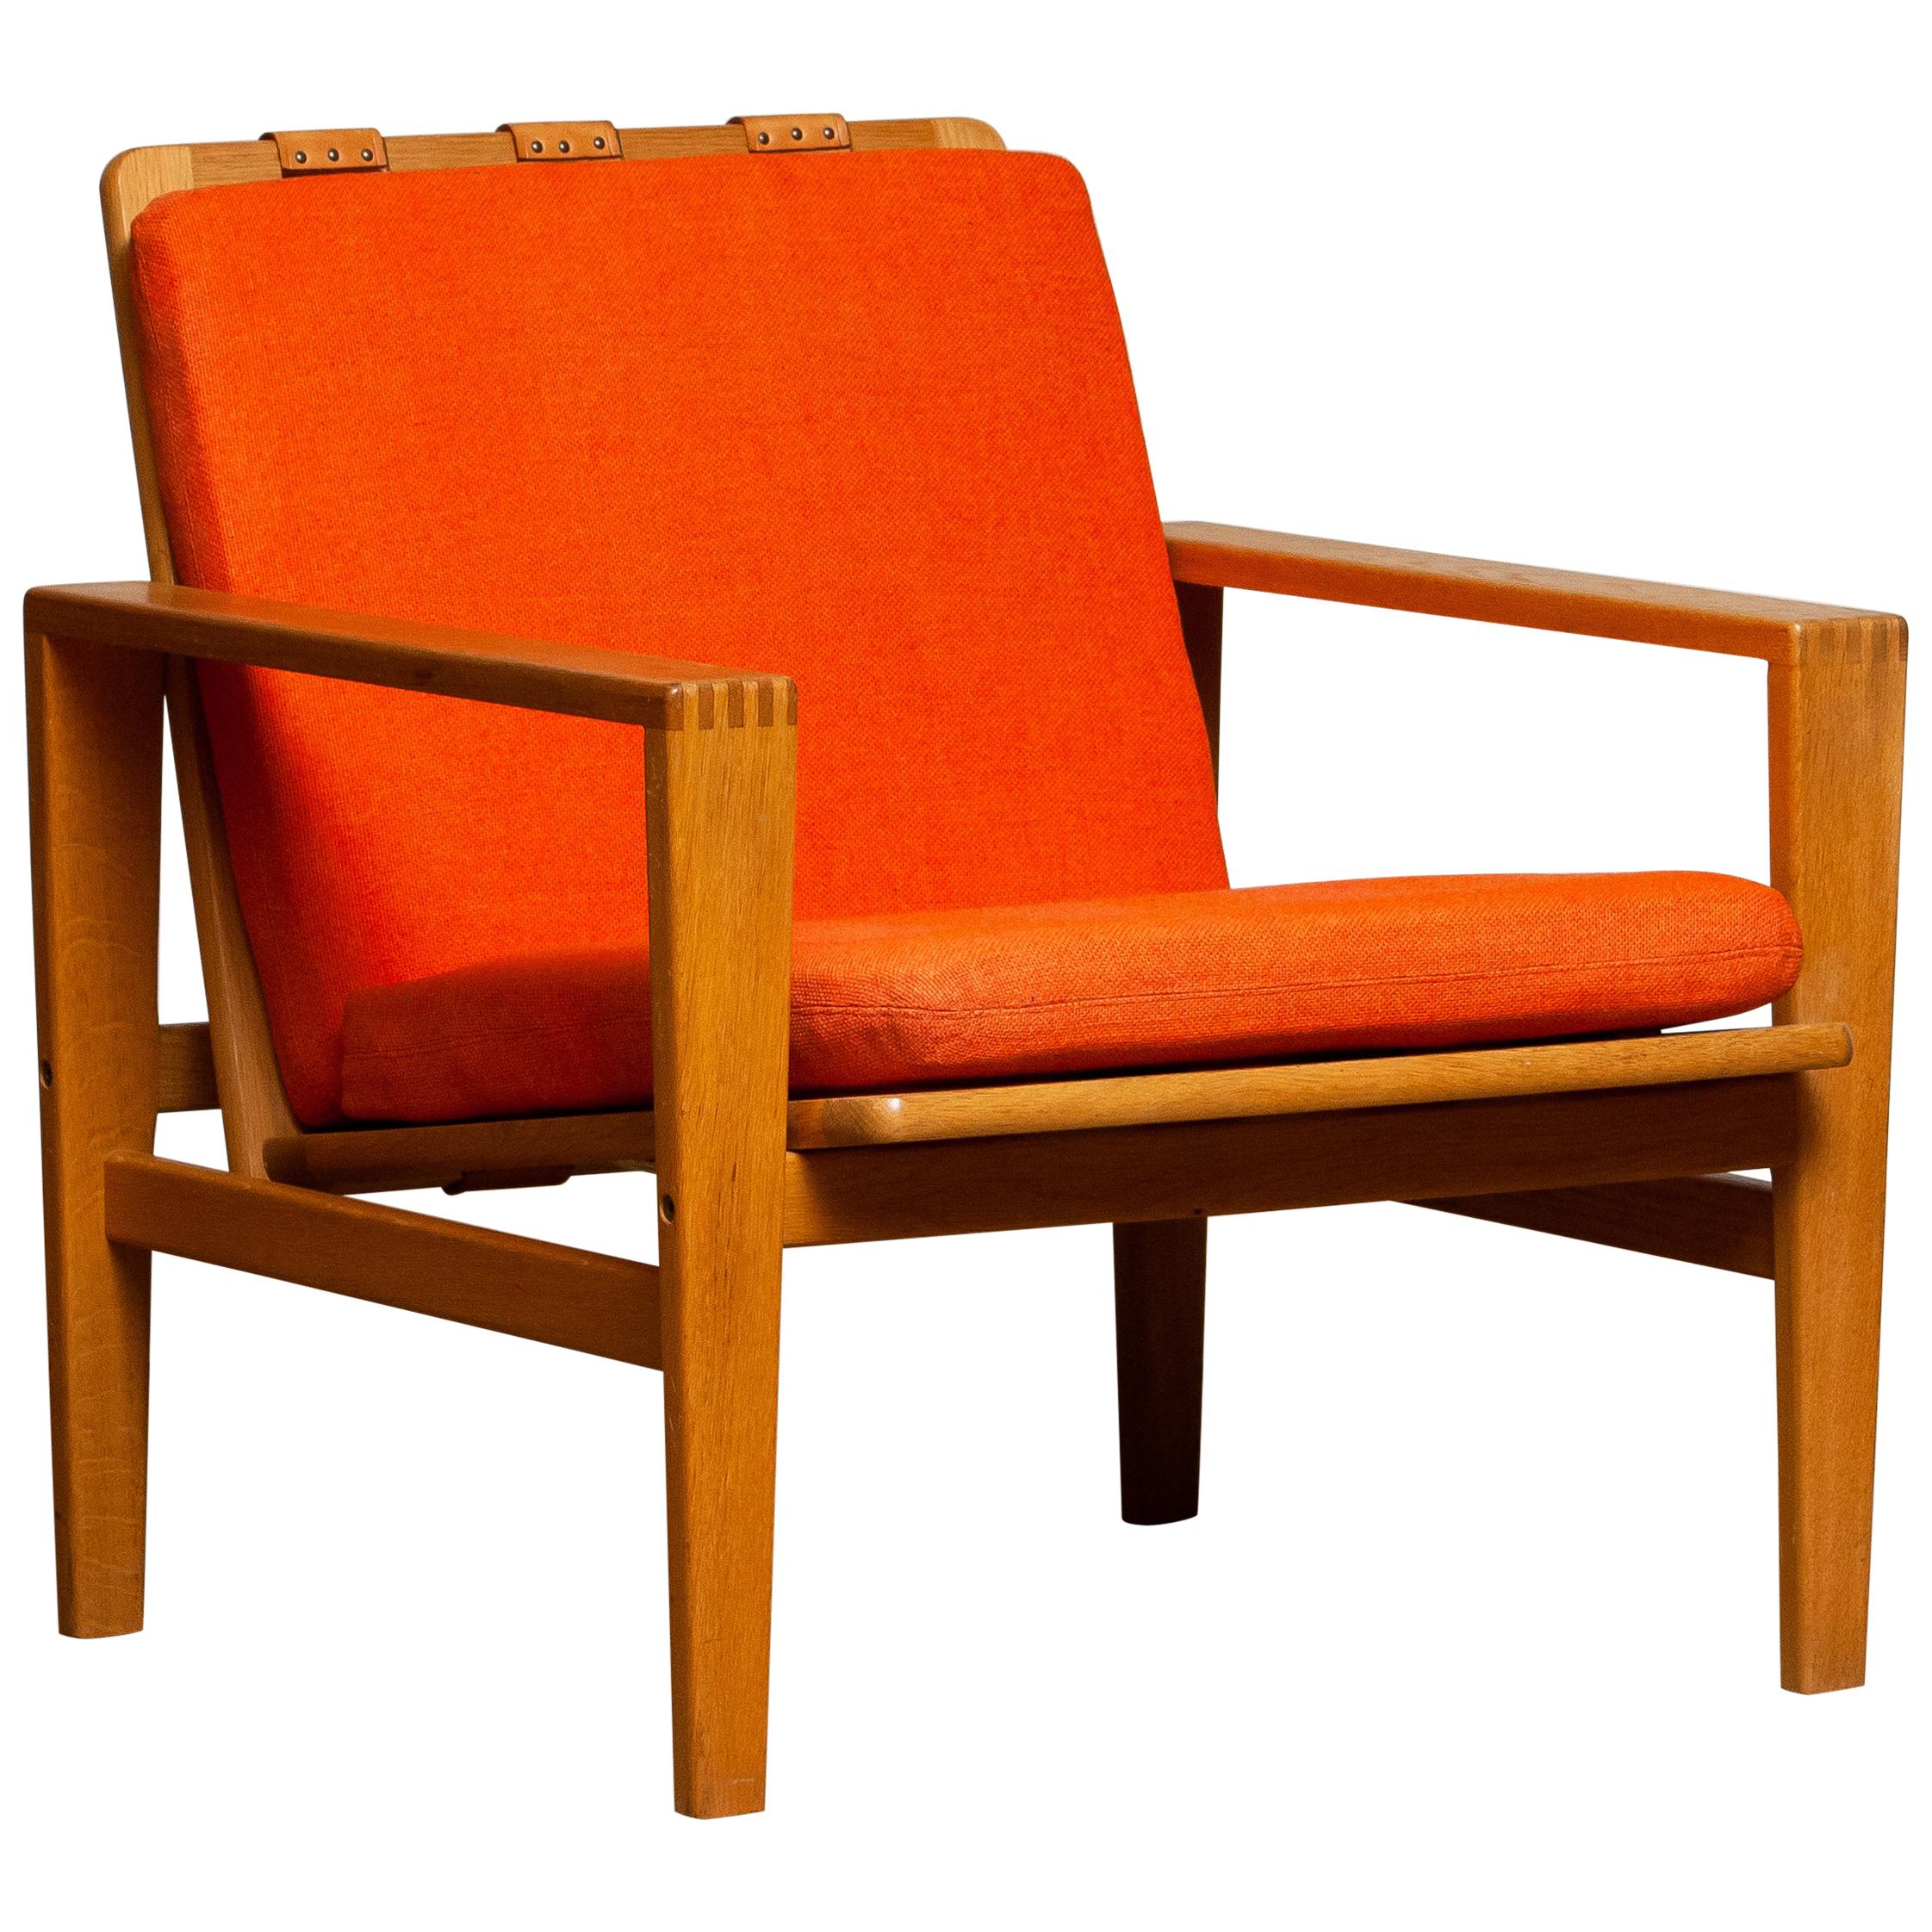 Swedish 1960s Scandinavian Lounge Easy Chair in Oak / Leather by Erik Merthen for Ire.2